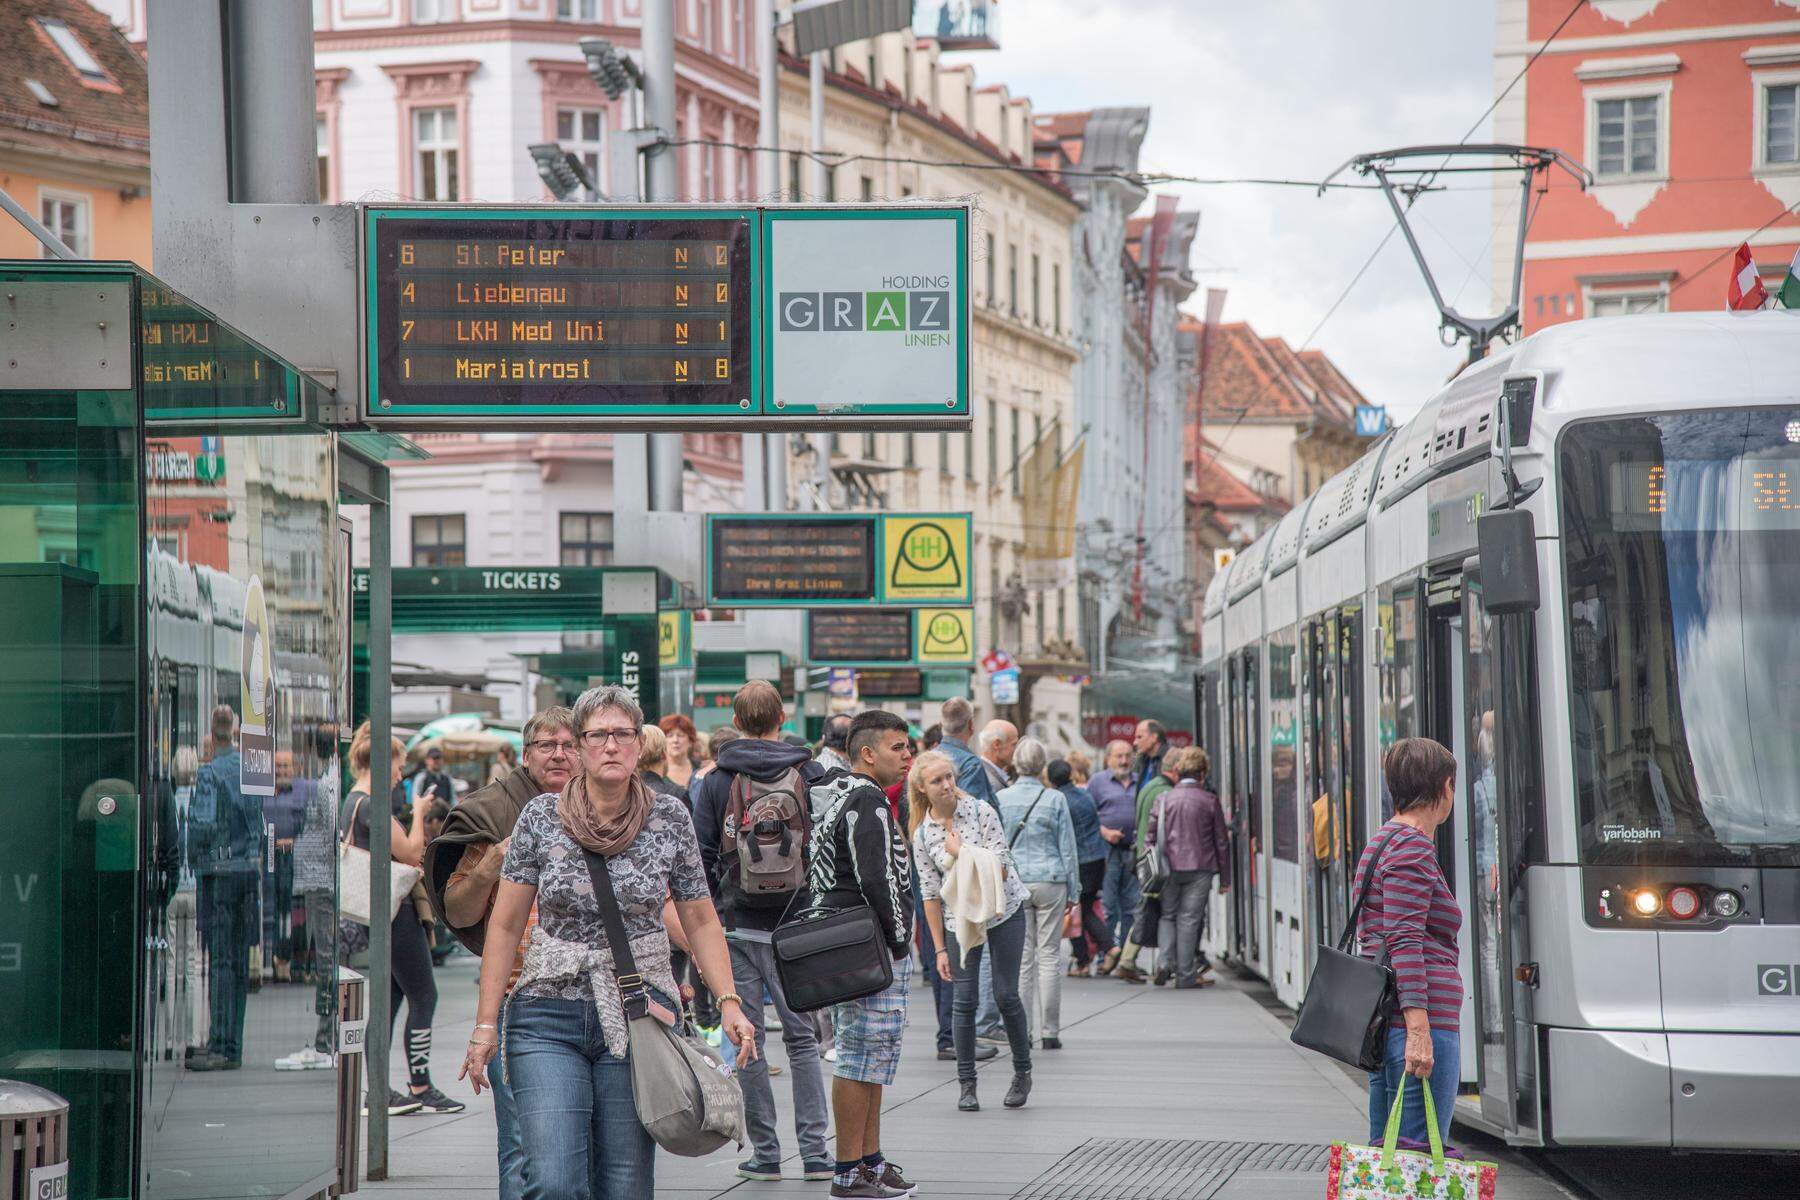 Fahrgäste befragt: Zeugnis für die Öffis – so bewerten Kunden die Graz-Linien